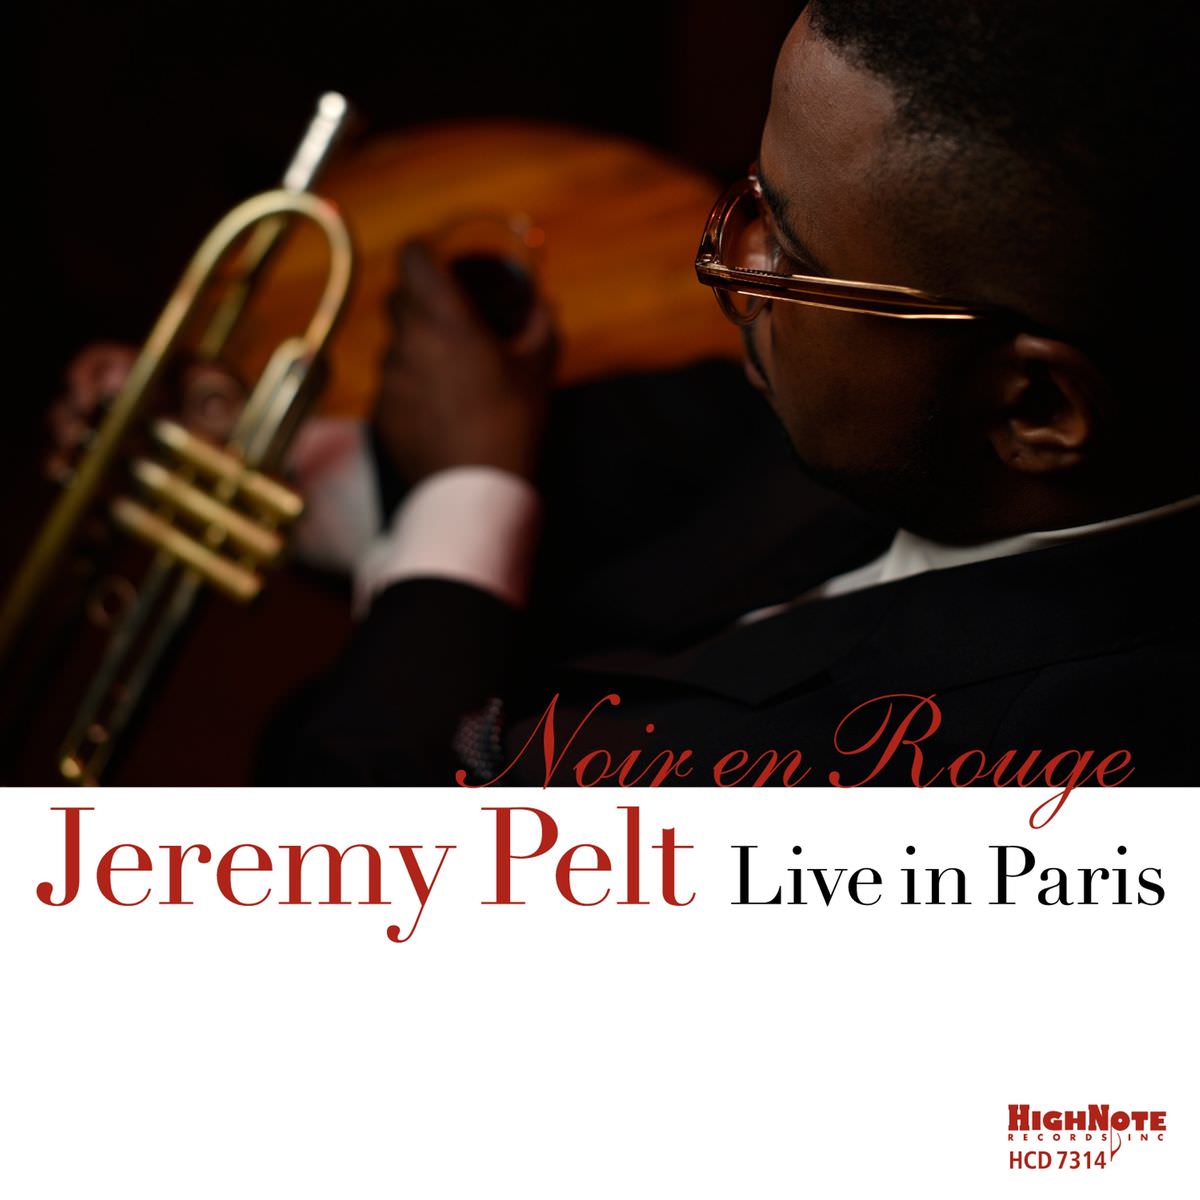 Jeremy Pelt - Noir en rouge (Live in Paris) (2018) [FLAC 24bit/48kHz]